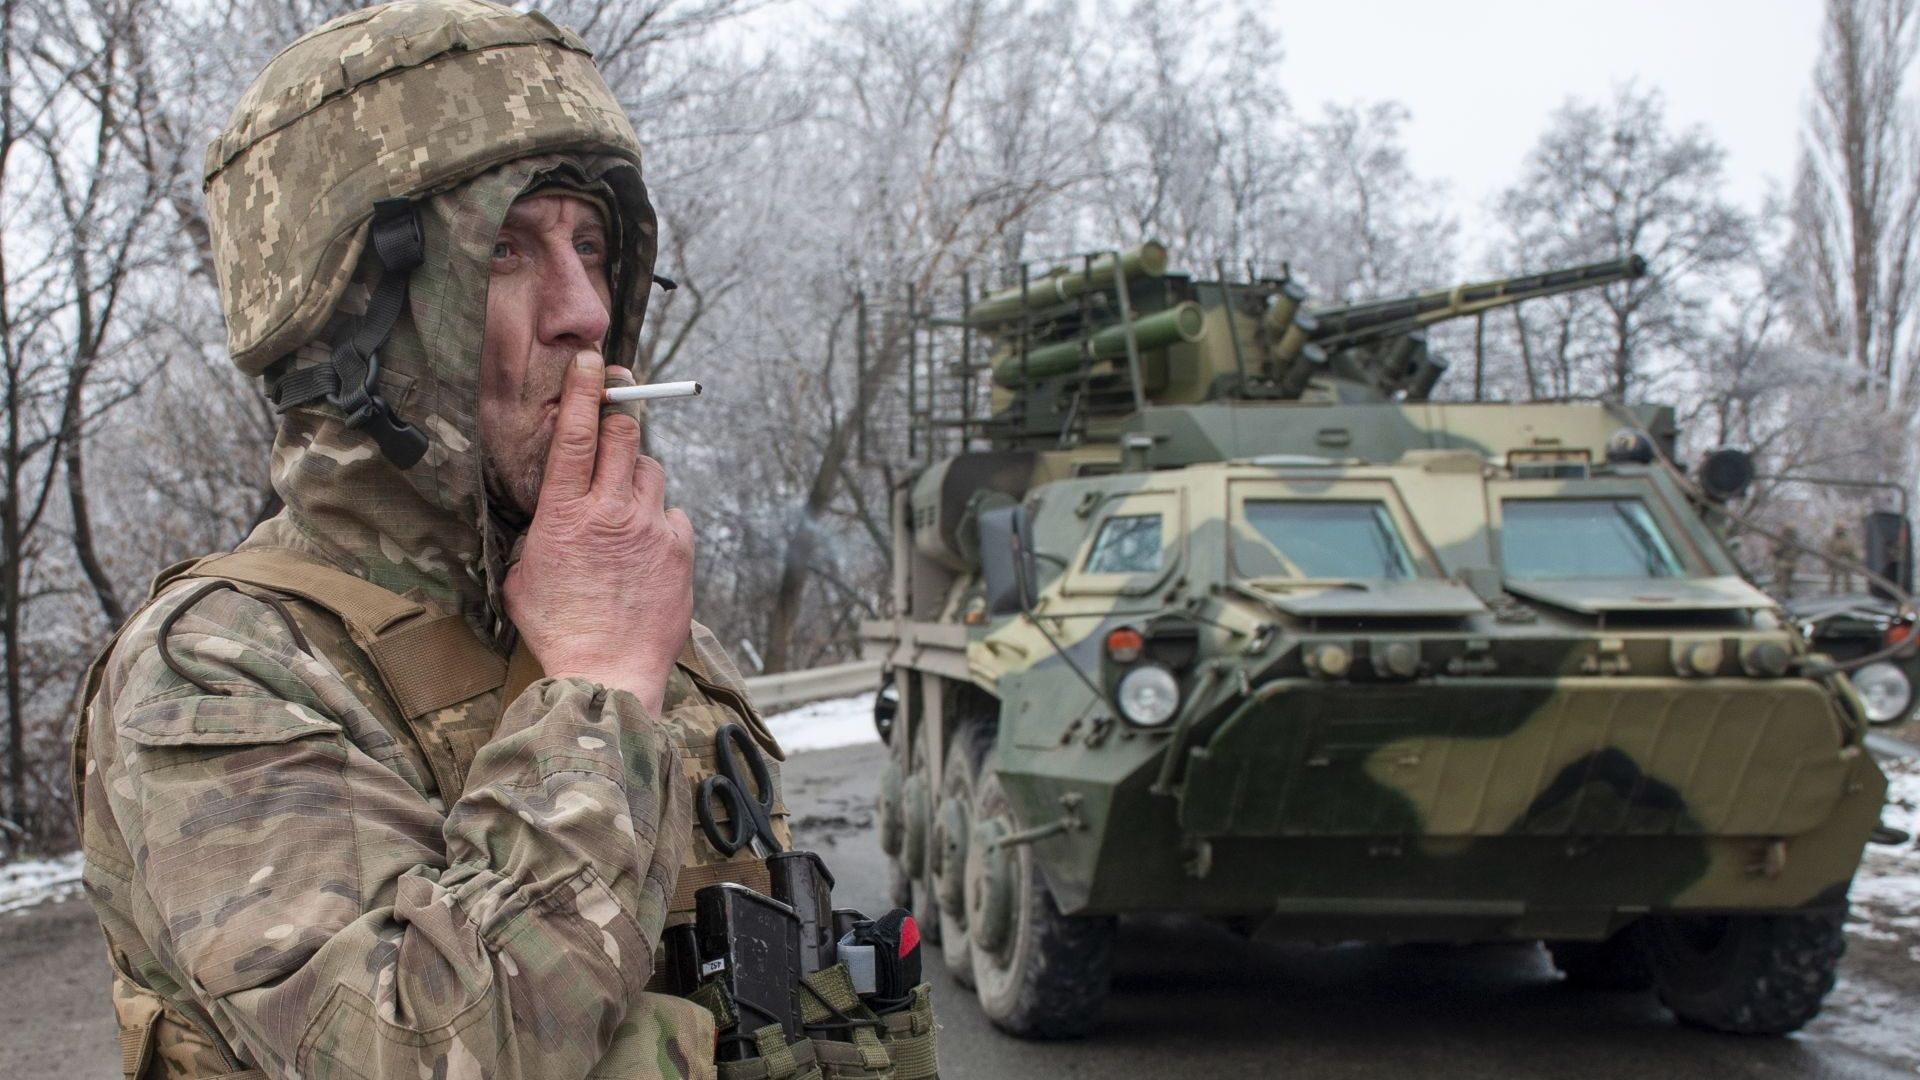 Русия призна за жертви и ранени, Украйна твърди, че е ликвидирала 4500 войници